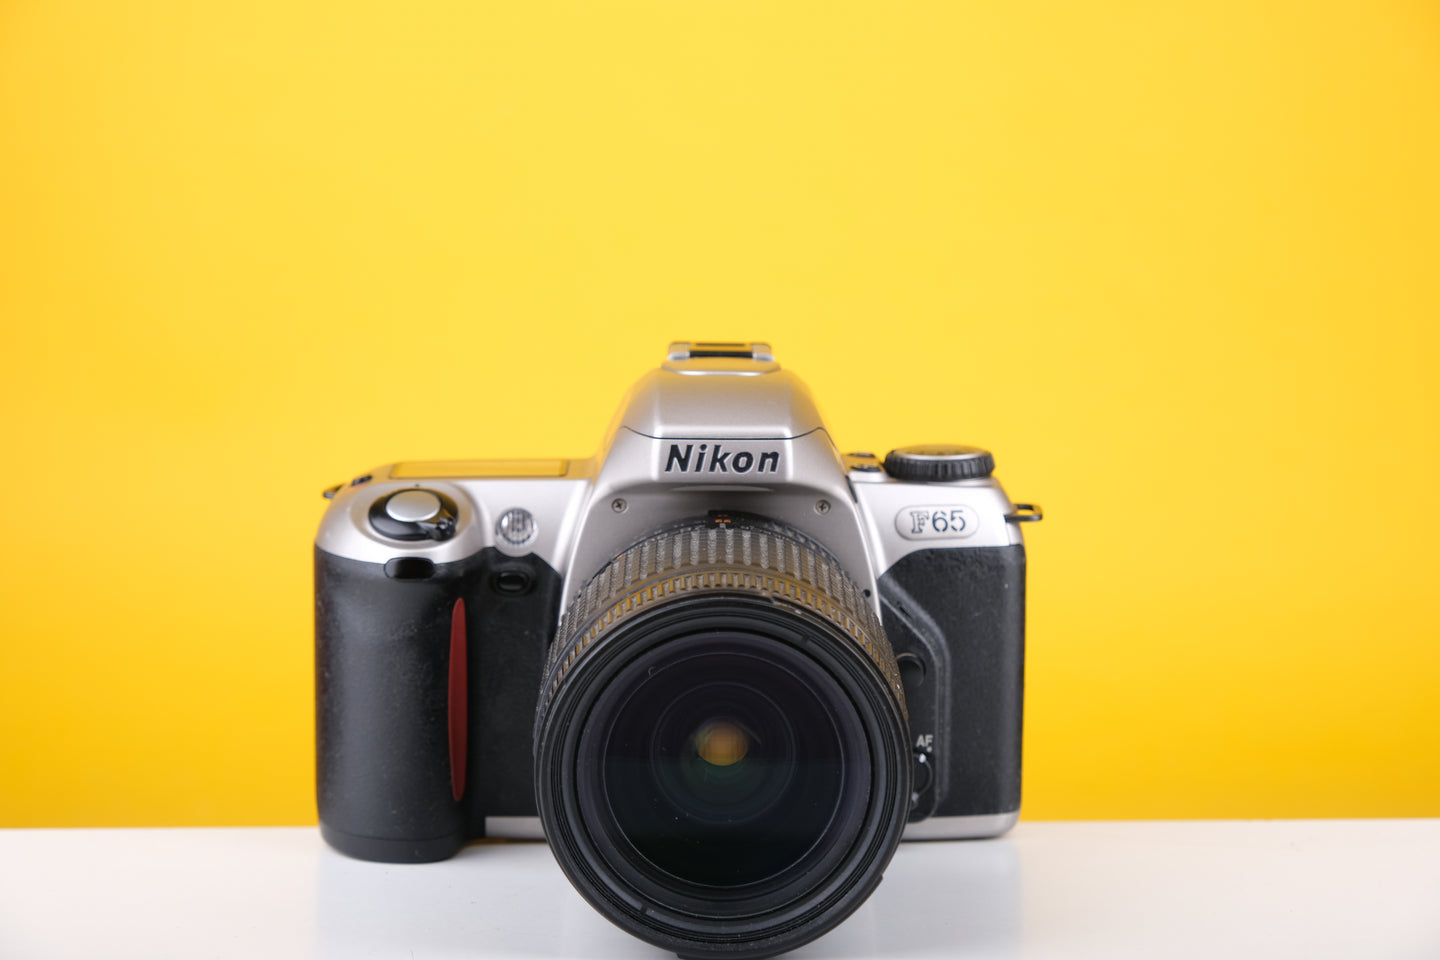 Nikon F65 35mm SLR Film Camera with 28-80mm Nikkor Lens